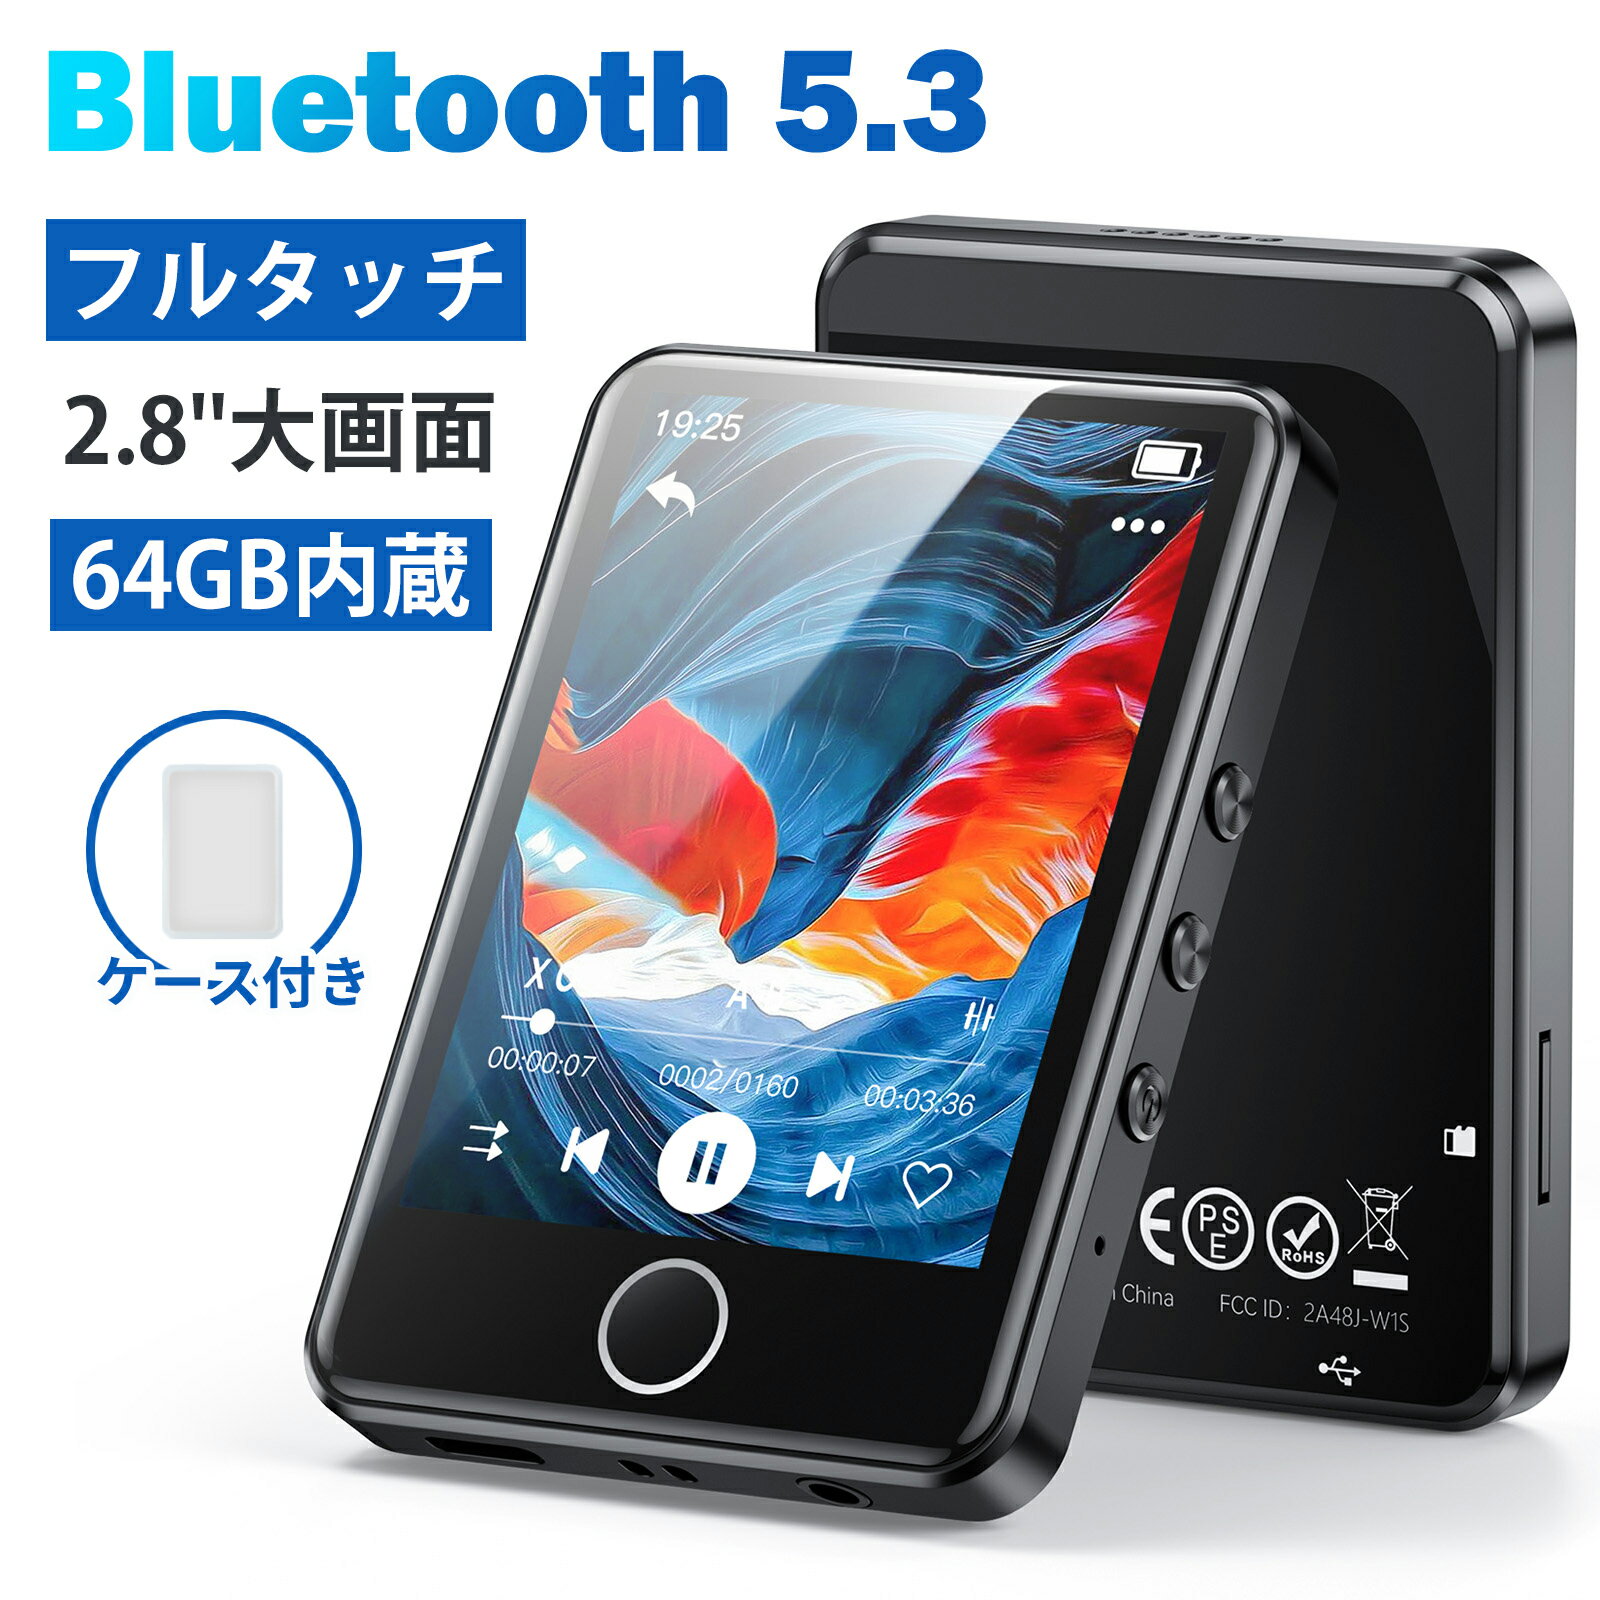 【日本企画品・フルタッチ】 AGPTEK mp3プレーヤー フルタッチスクリーン Bluetooth ...